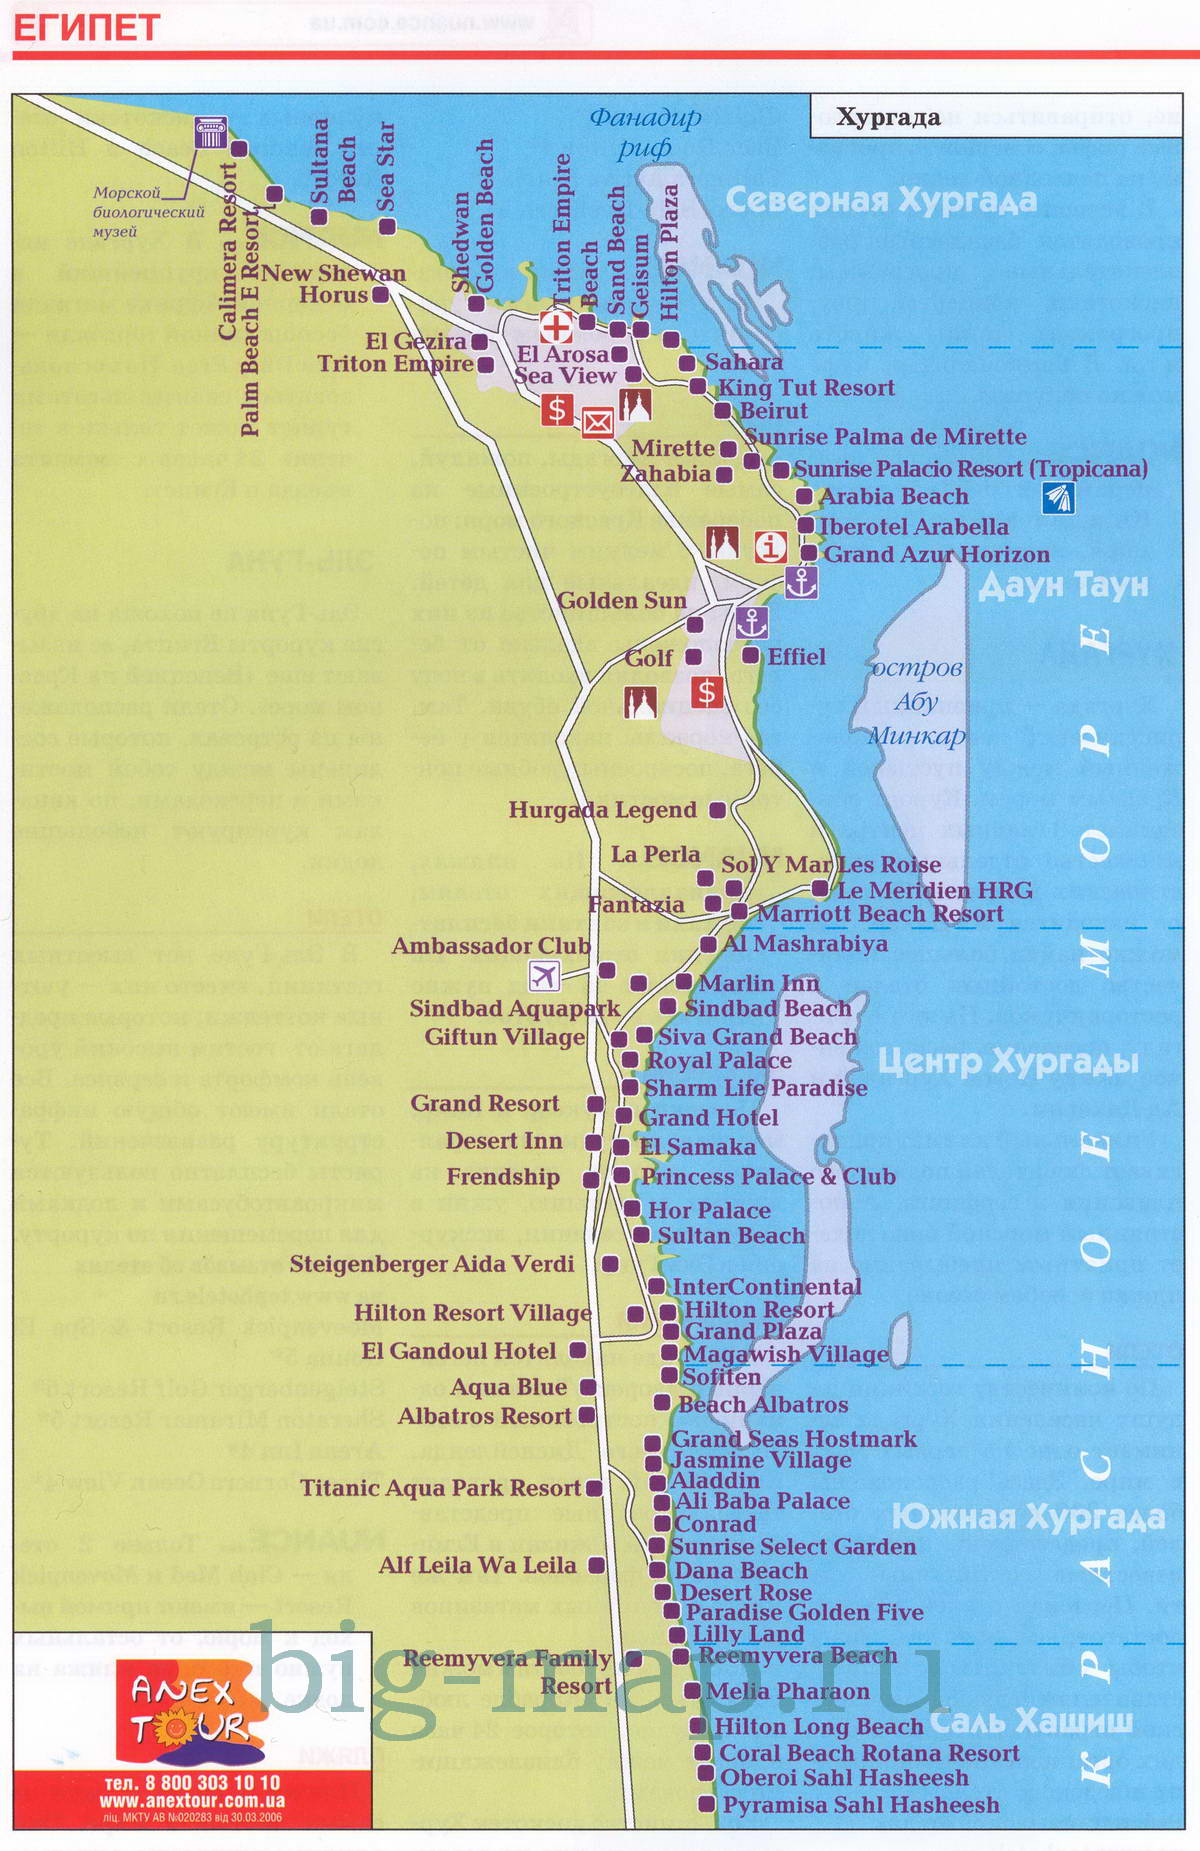 Египет, карта отелей курорта Хургада, Красное море, A0 - 